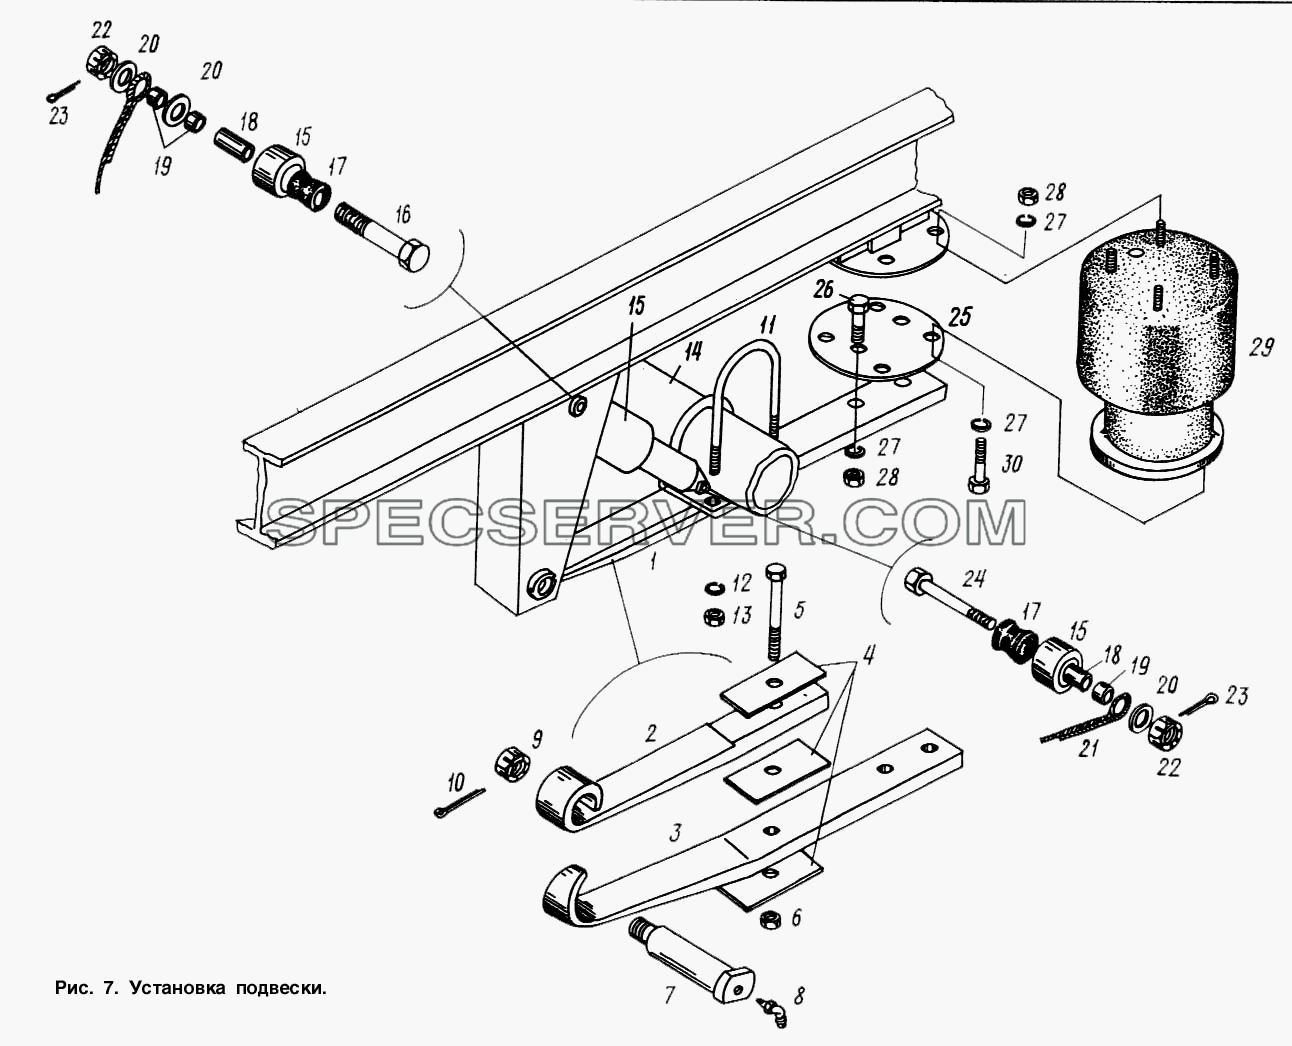 Установка подвески для МАЗ-9758-30 (список запасных частей)